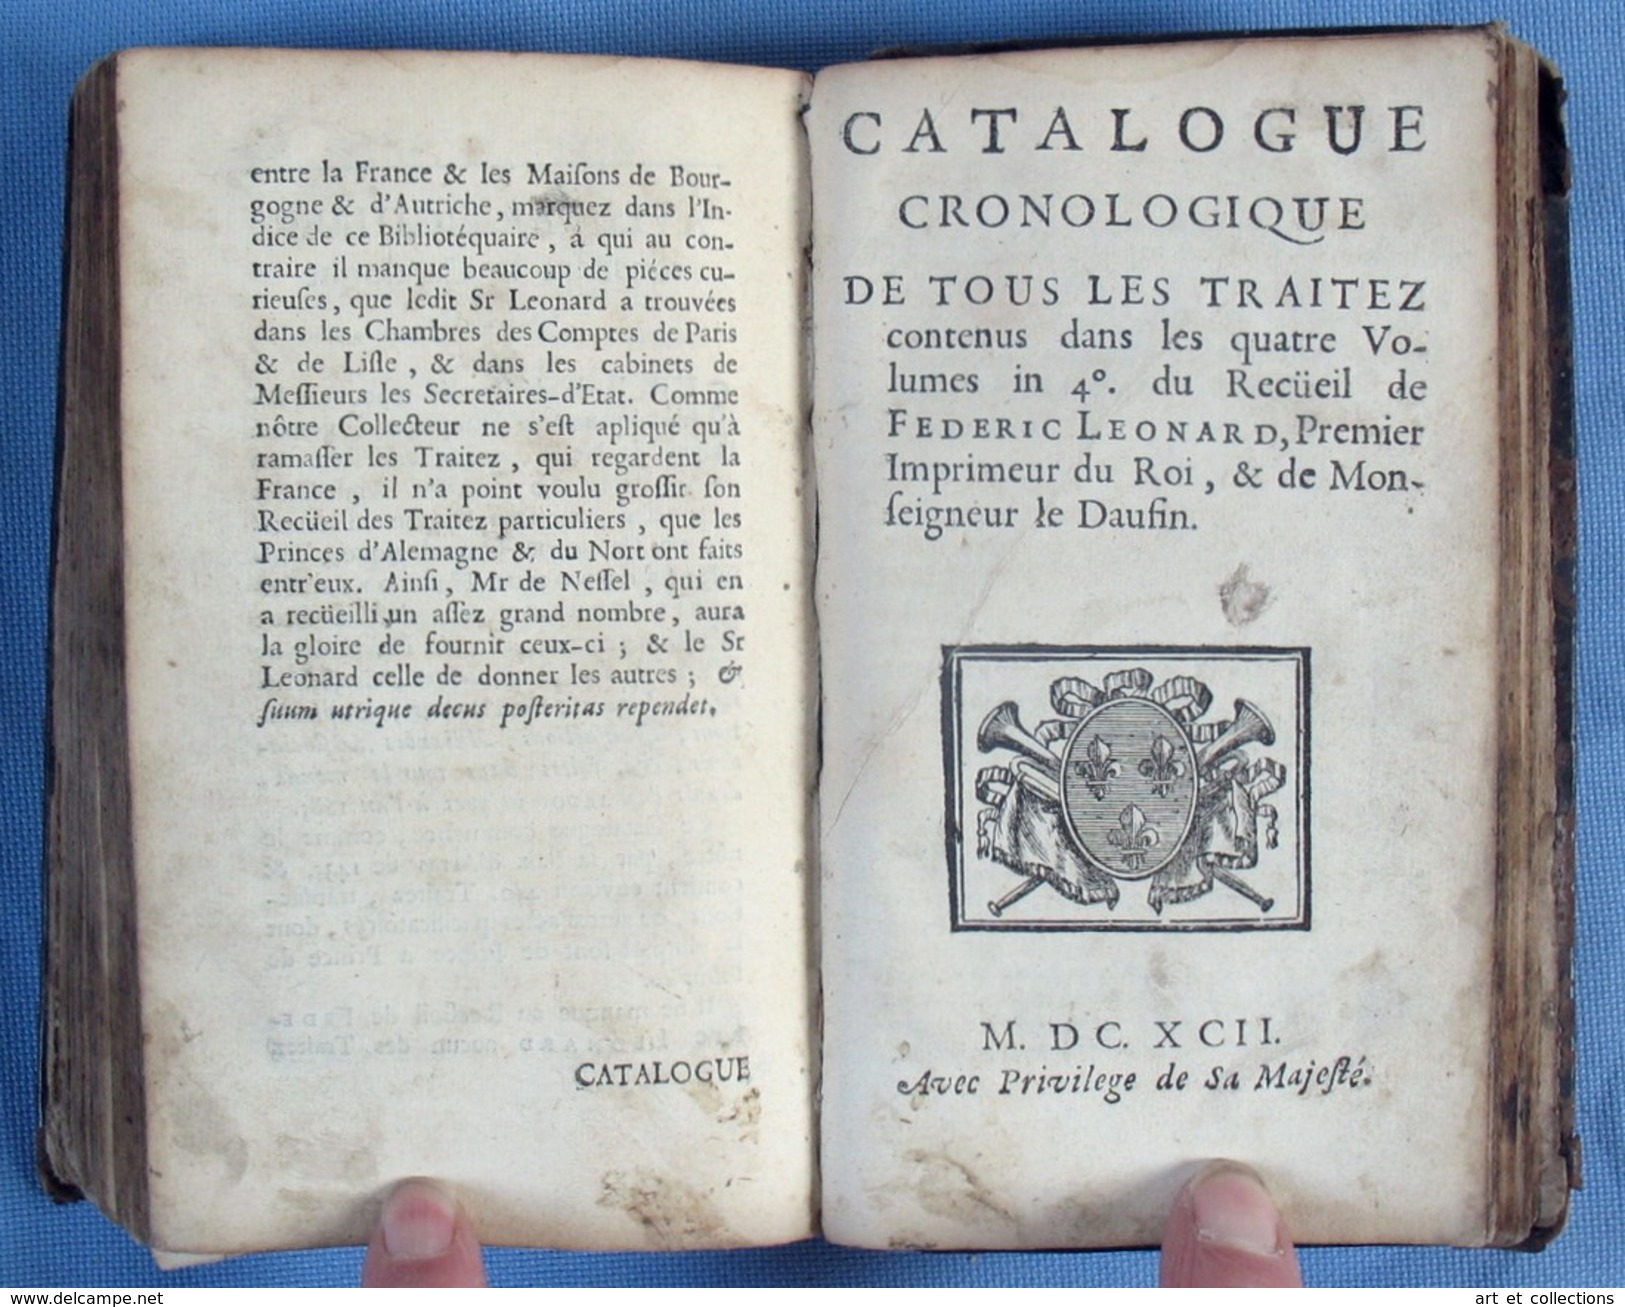 Discours Historiques sur les TRAITEZ des PRINCES / Amilot de la Houssaie / Fedéric Leonard en 1692